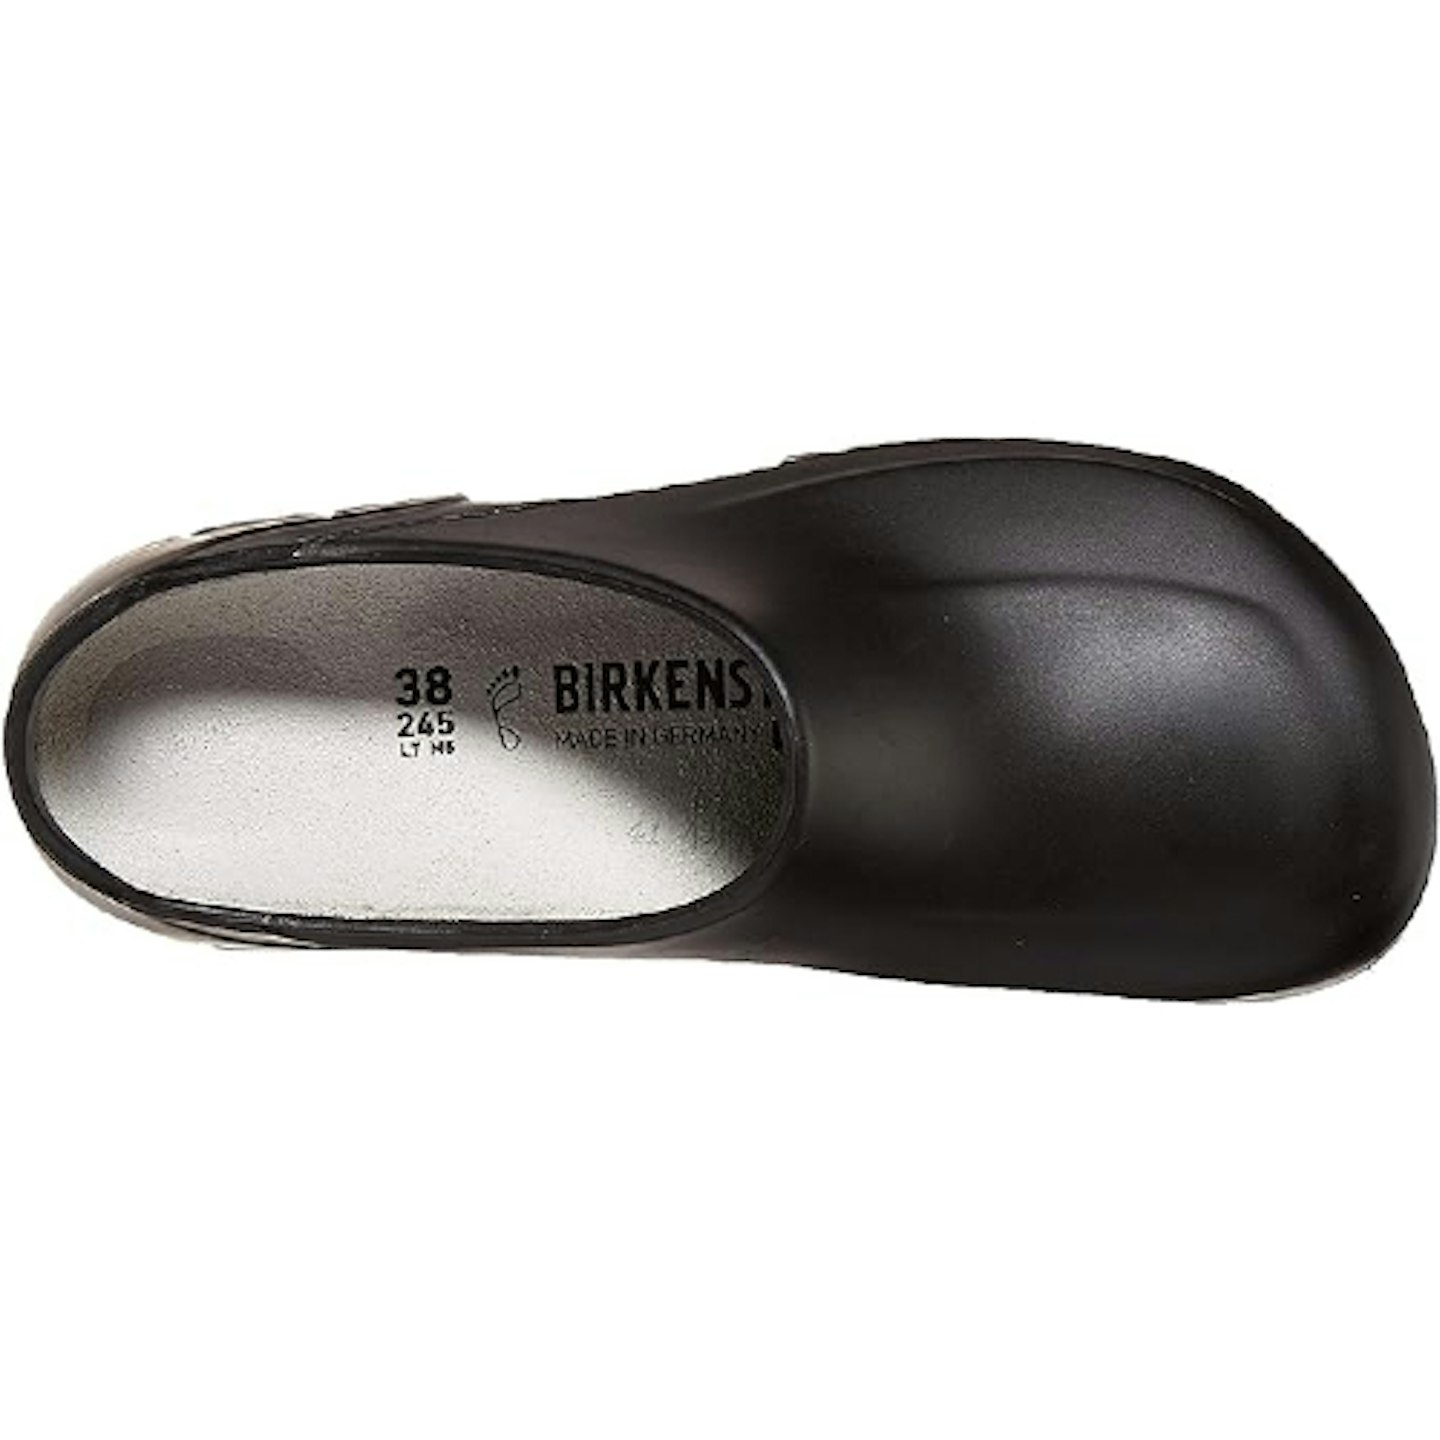 Birkenstock garden shoe 